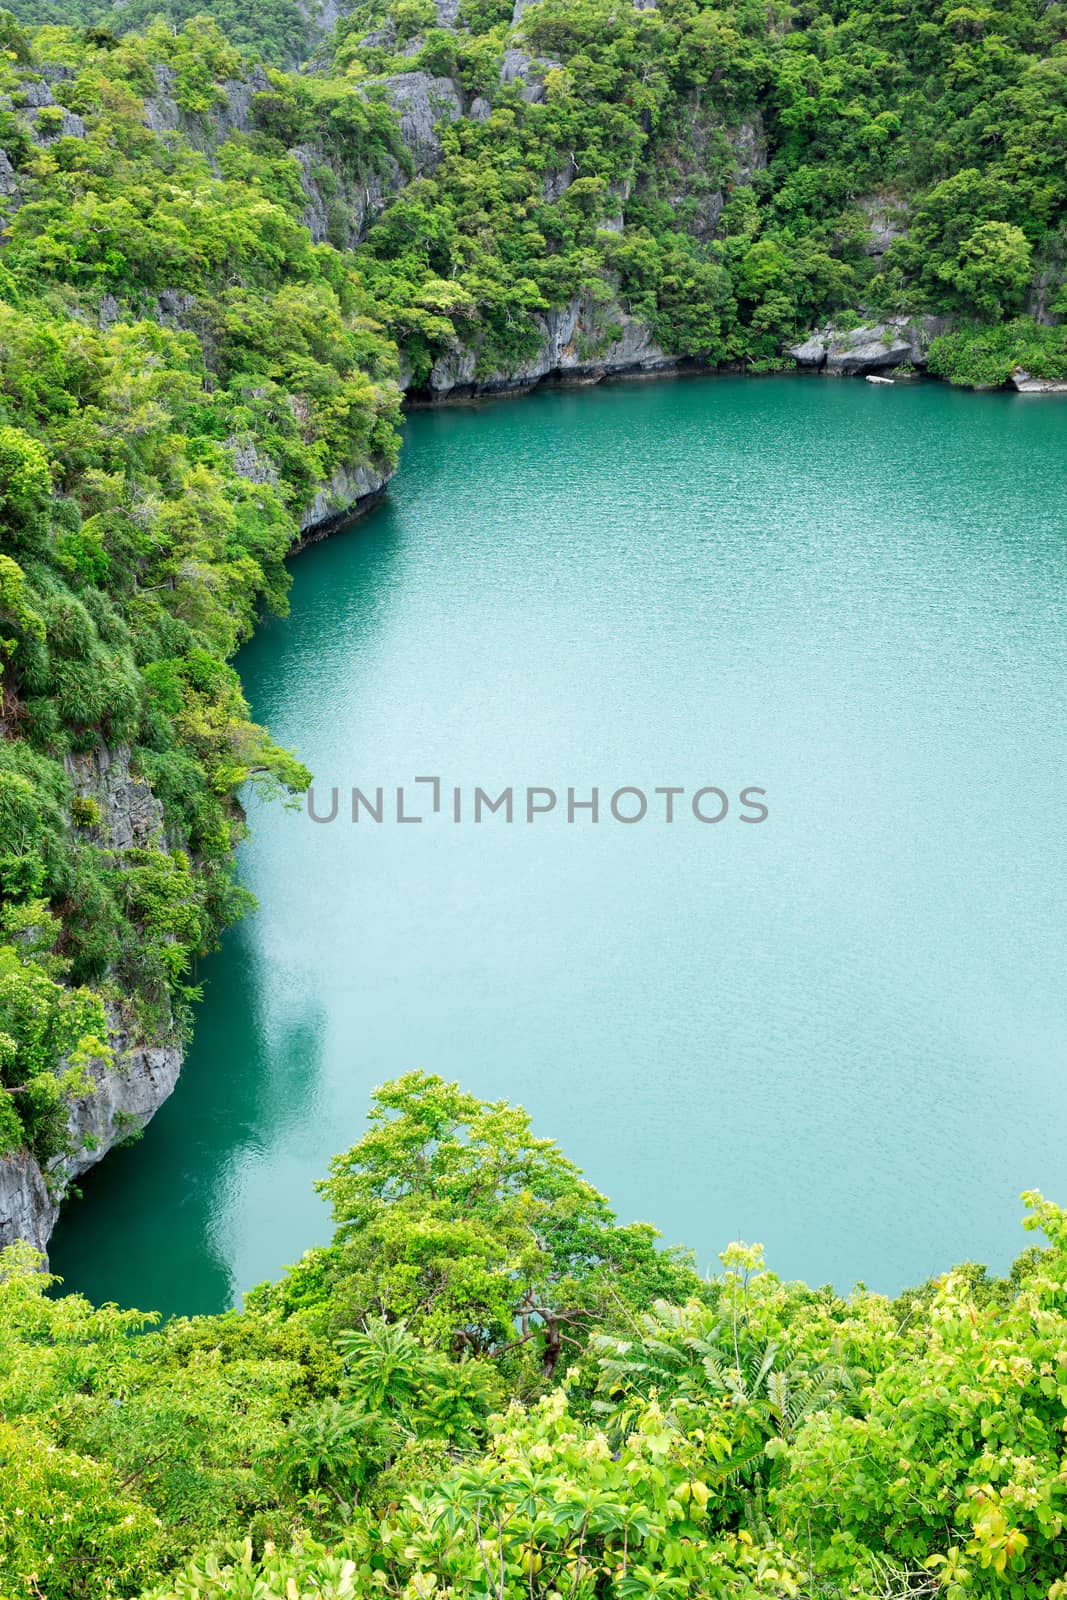 The lagoon called 'Talay Nai' in Moo Koh Ang Tong National Park